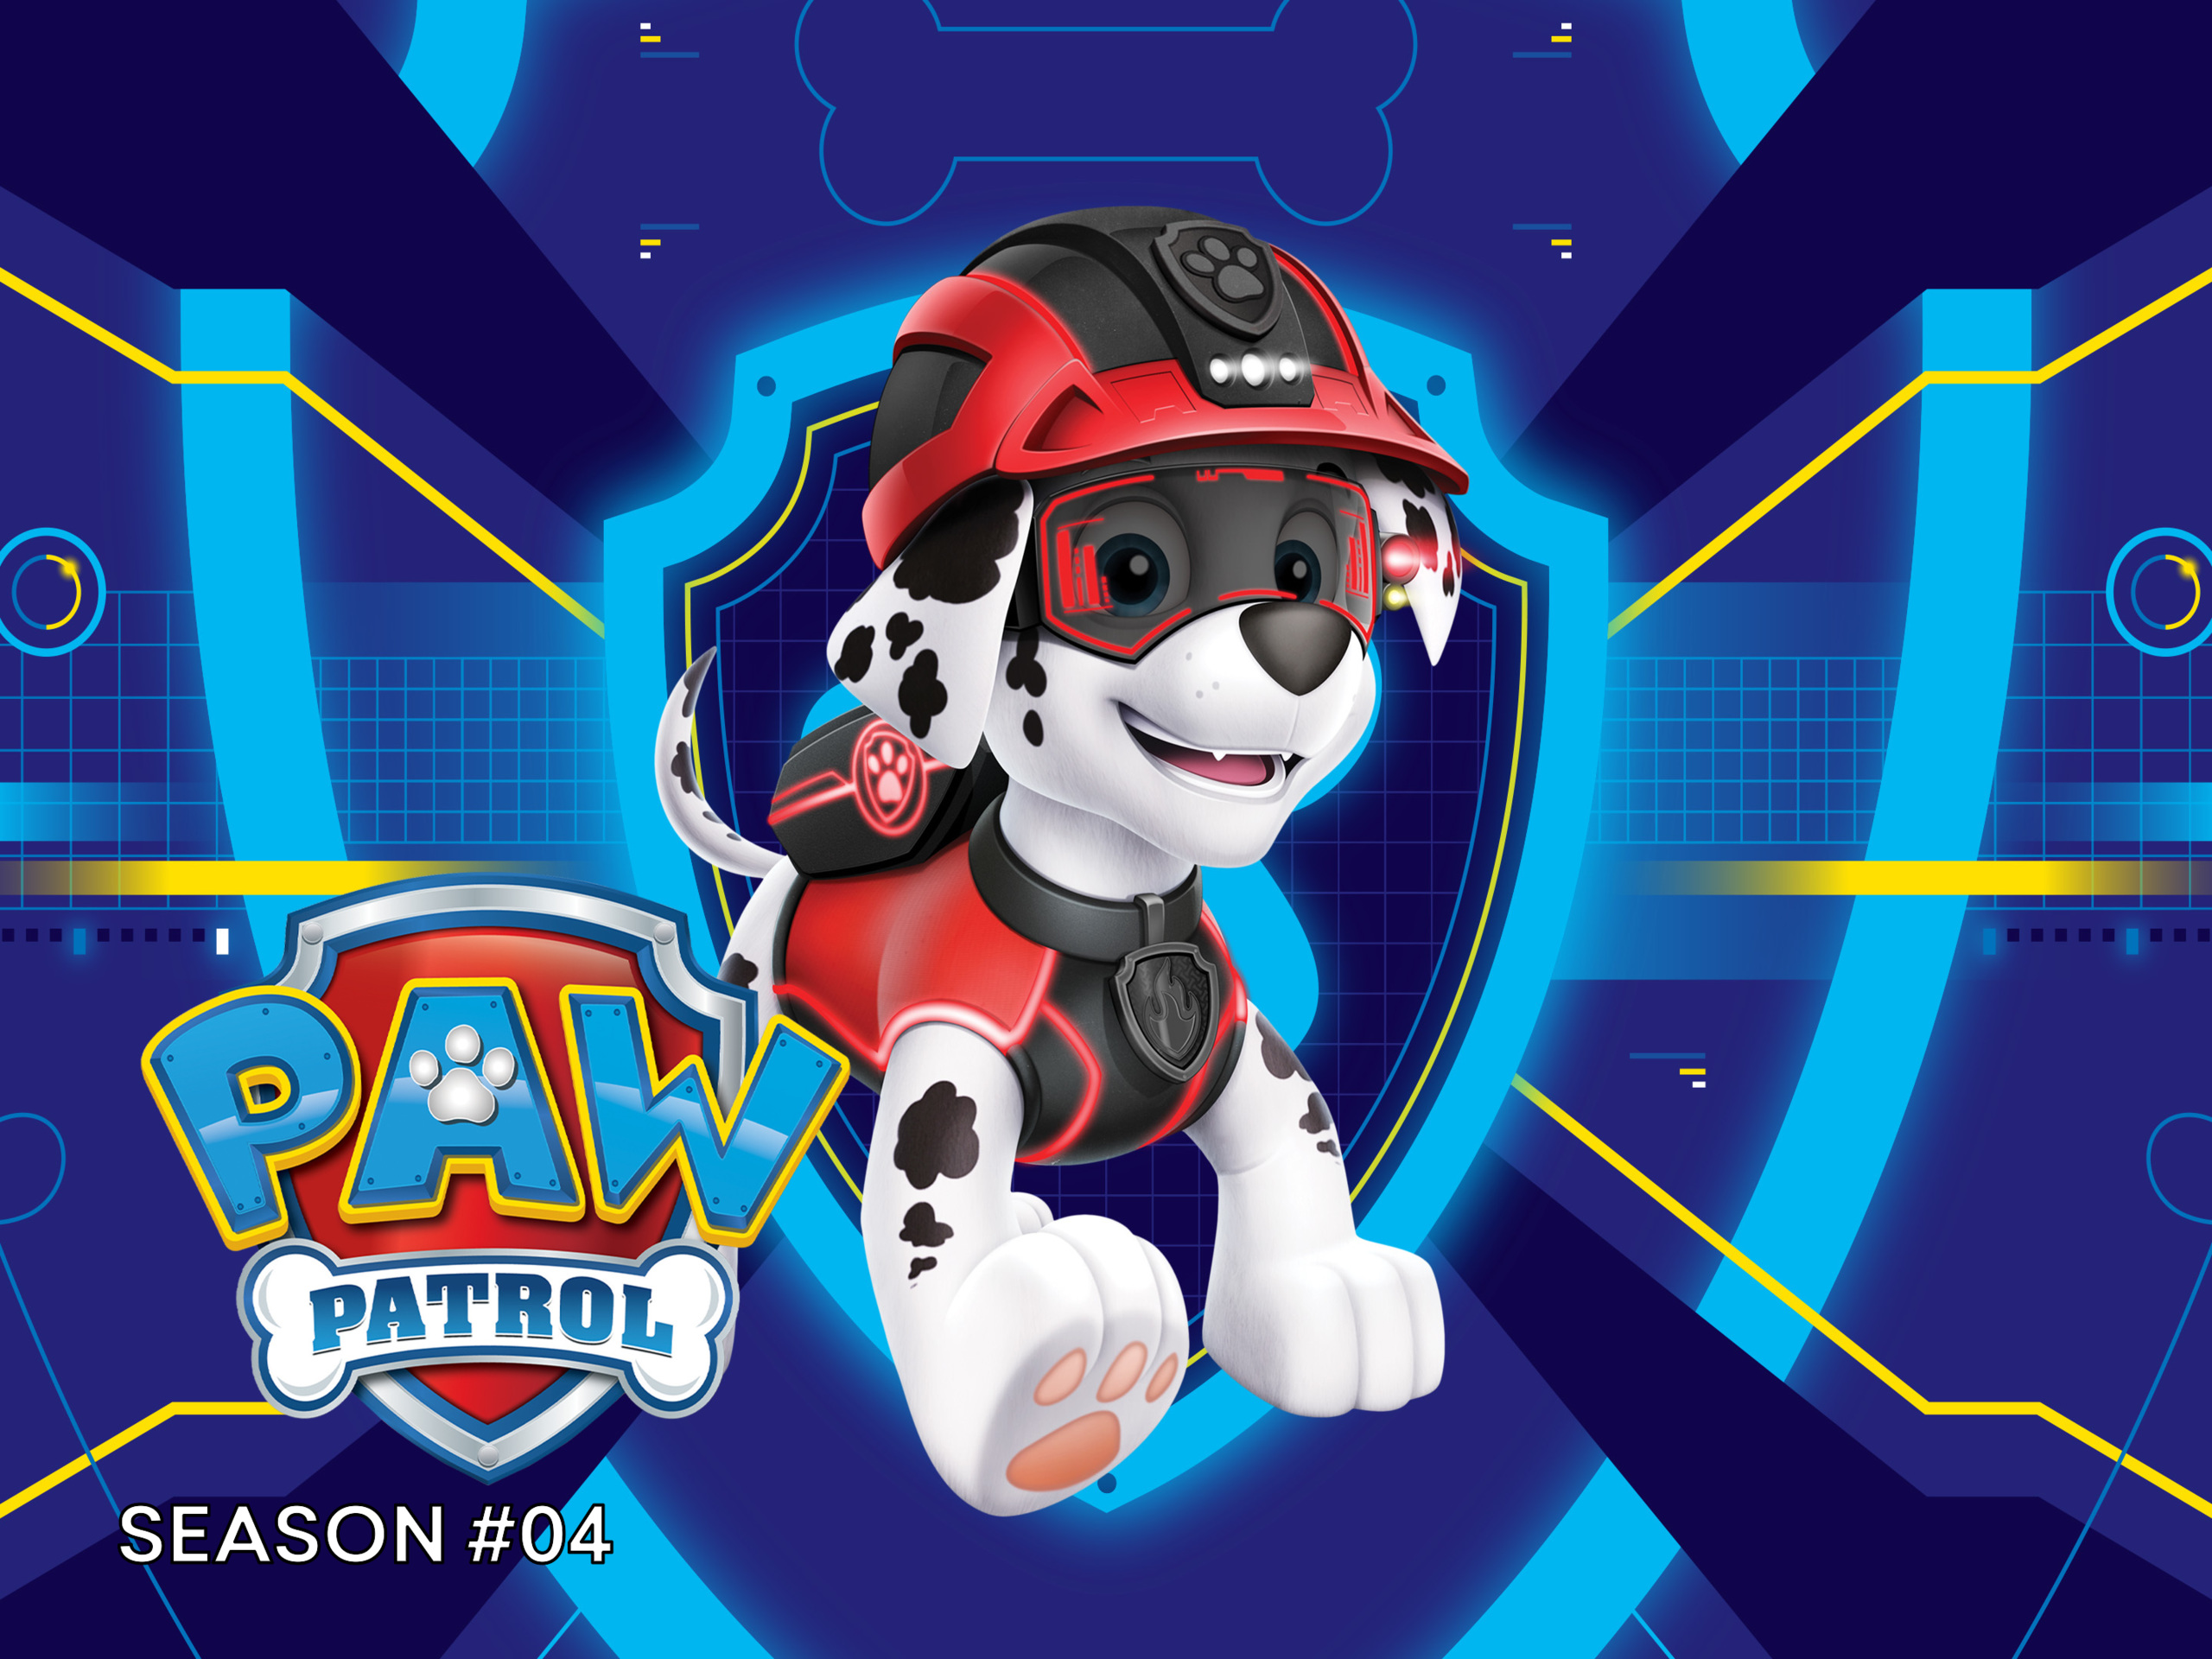 Prime video paw patrol season